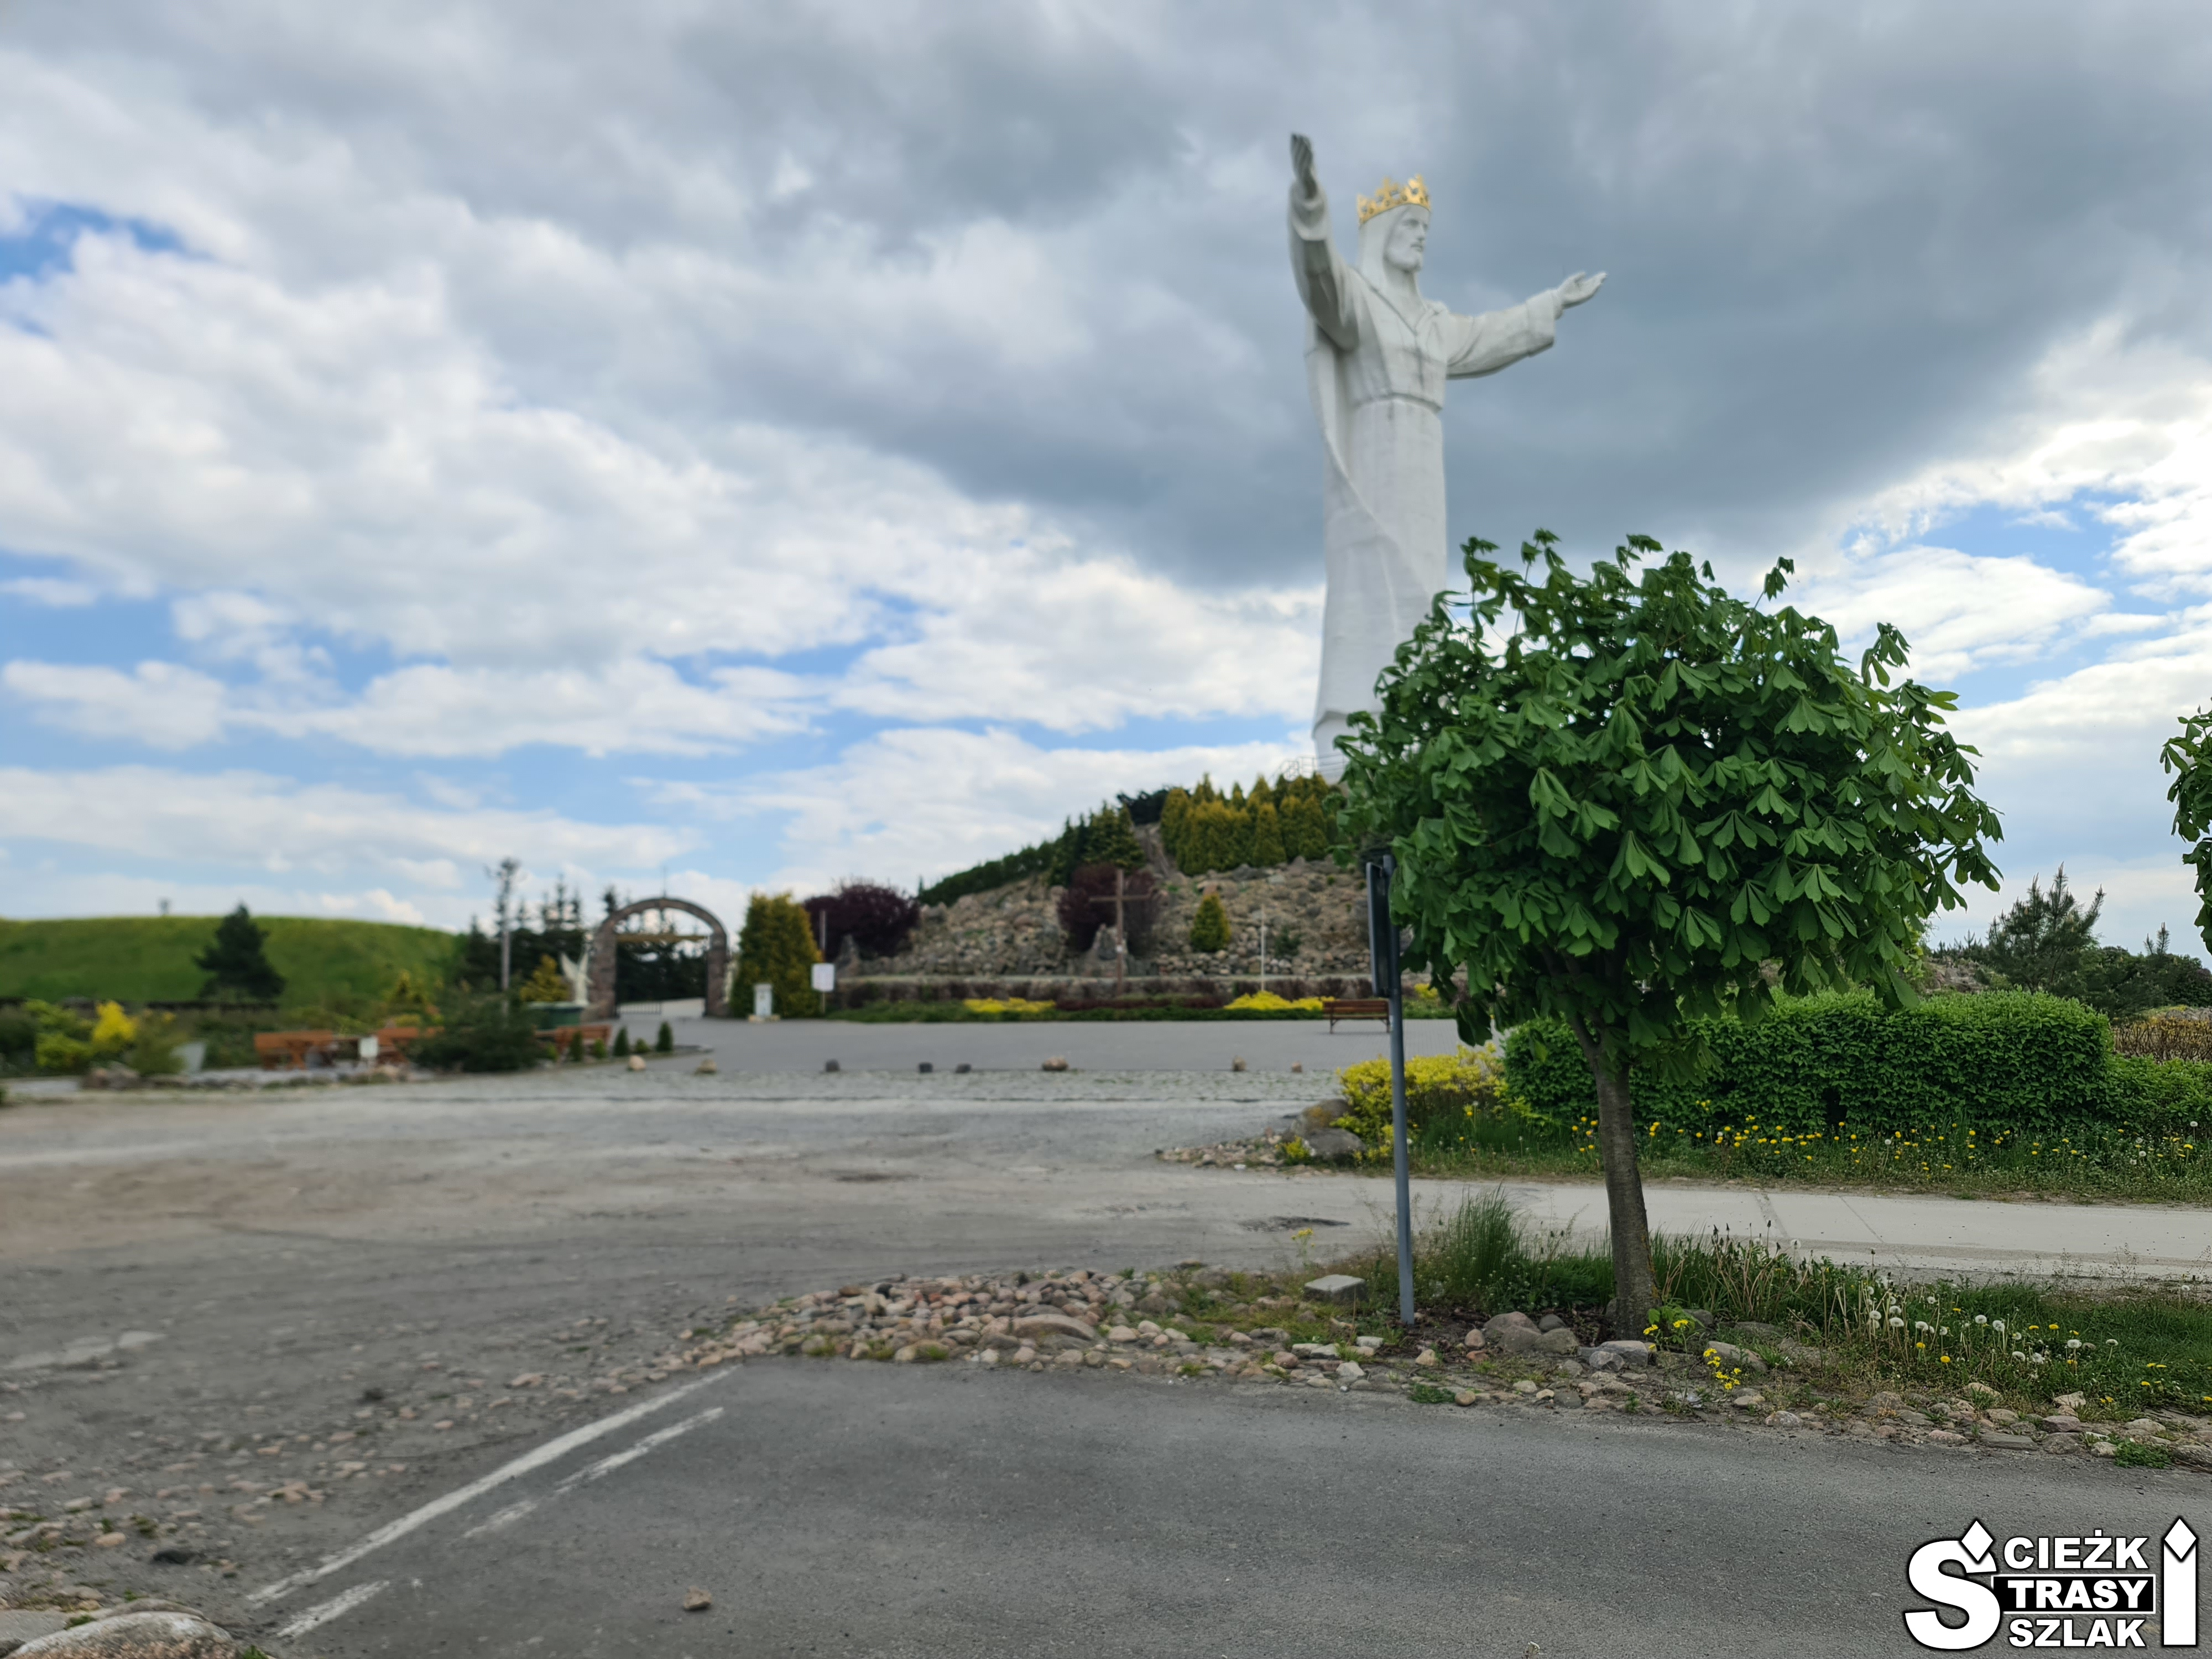 Monumentalny pomnika Chrystusa Króla z rozłożonymi rękami na wzgórzu, do którego prowadzą ścieżki i alejki